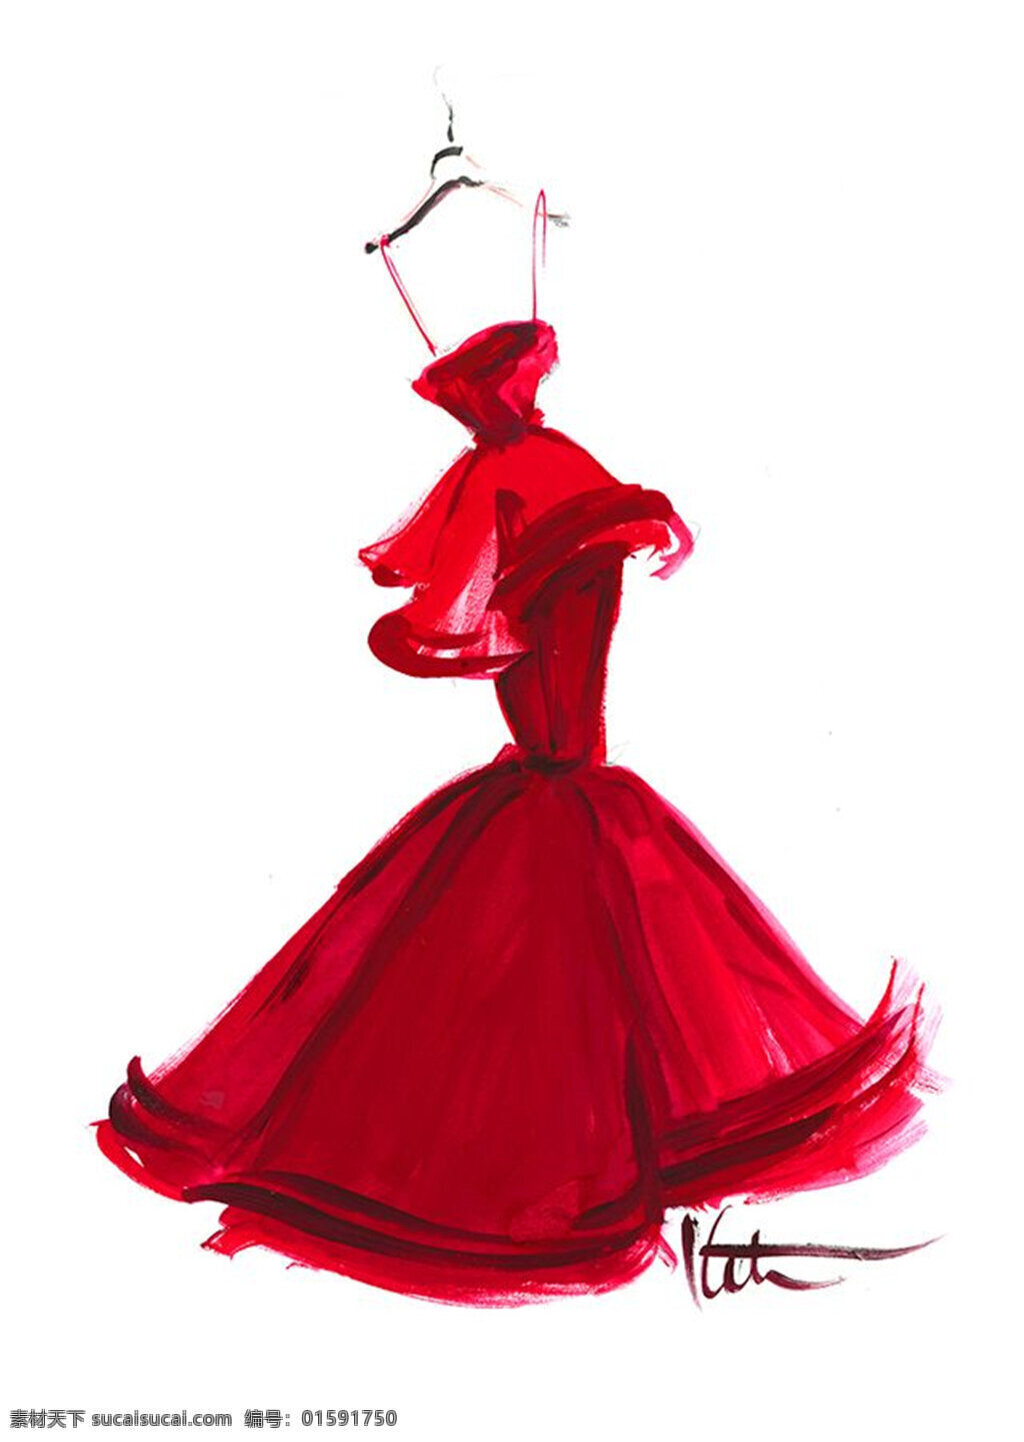 红色 抹胸 礼服 设计图 服装设计 时尚女装 职业女装 职业装 女装设计 效果图 短裙 衬衫 服装 服装效果图 连衣裙 长裙 婚纱